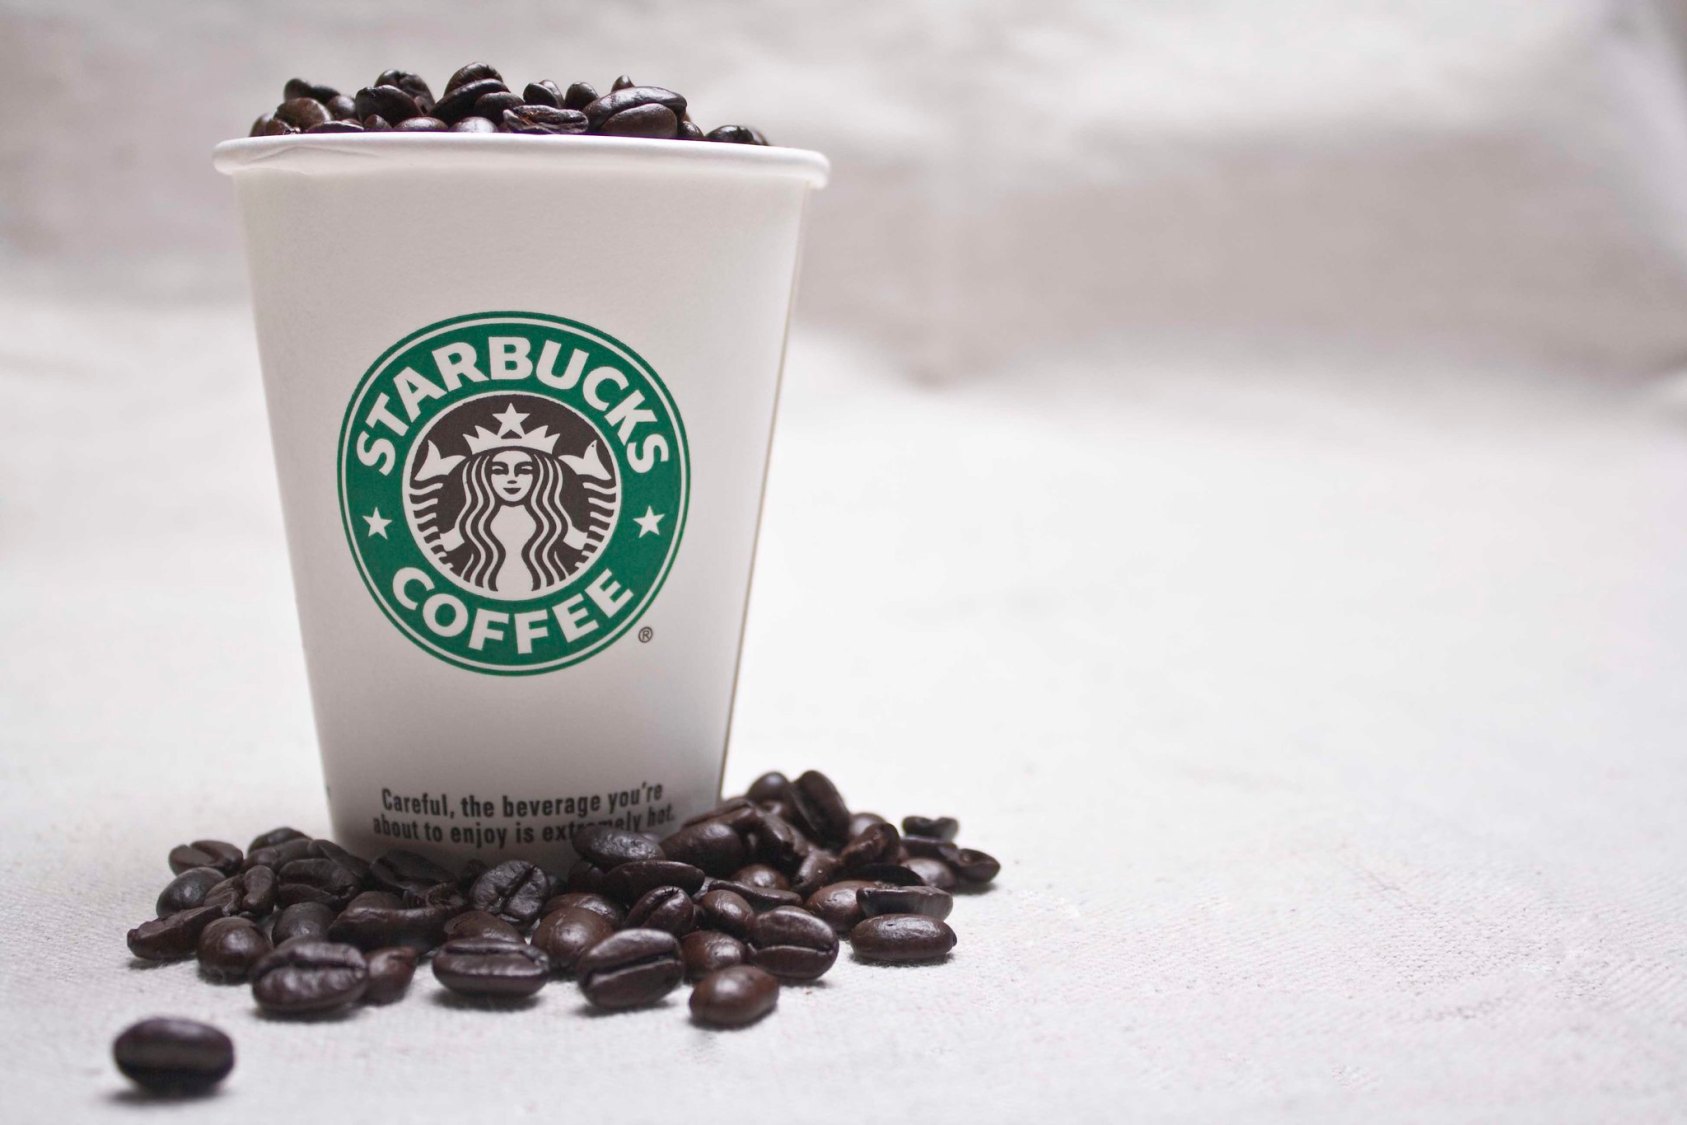 Foto de um copo da rede Starbucks com grãos de café em cima.